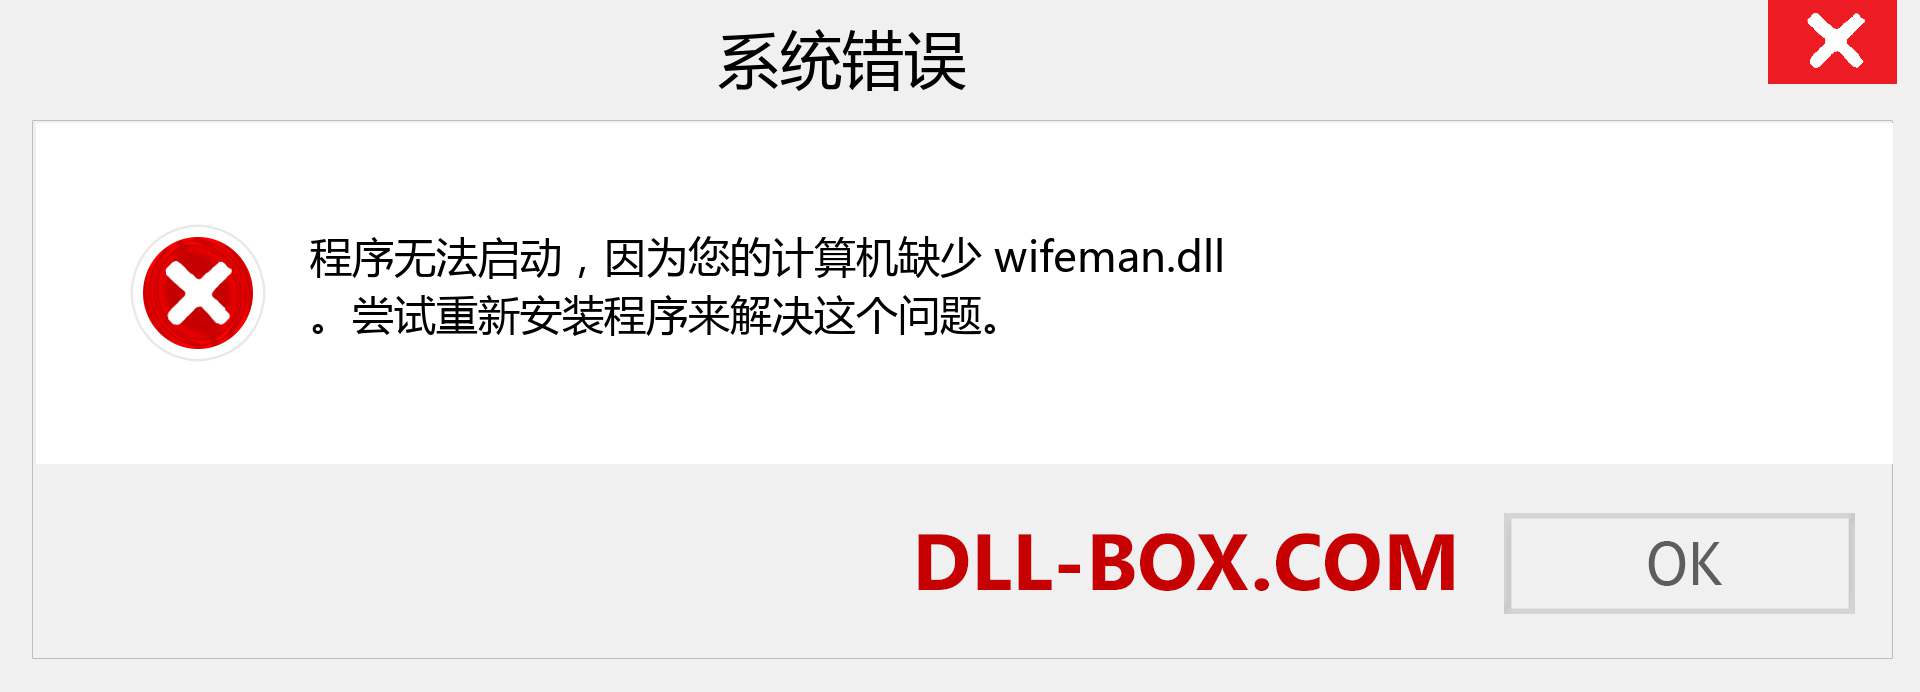 wifeman.dll 文件丢失？。 适用于 Windows 7、8、10 的下载 - 修复 Windows、照片、图像上的 wifeman dll 丢失错误